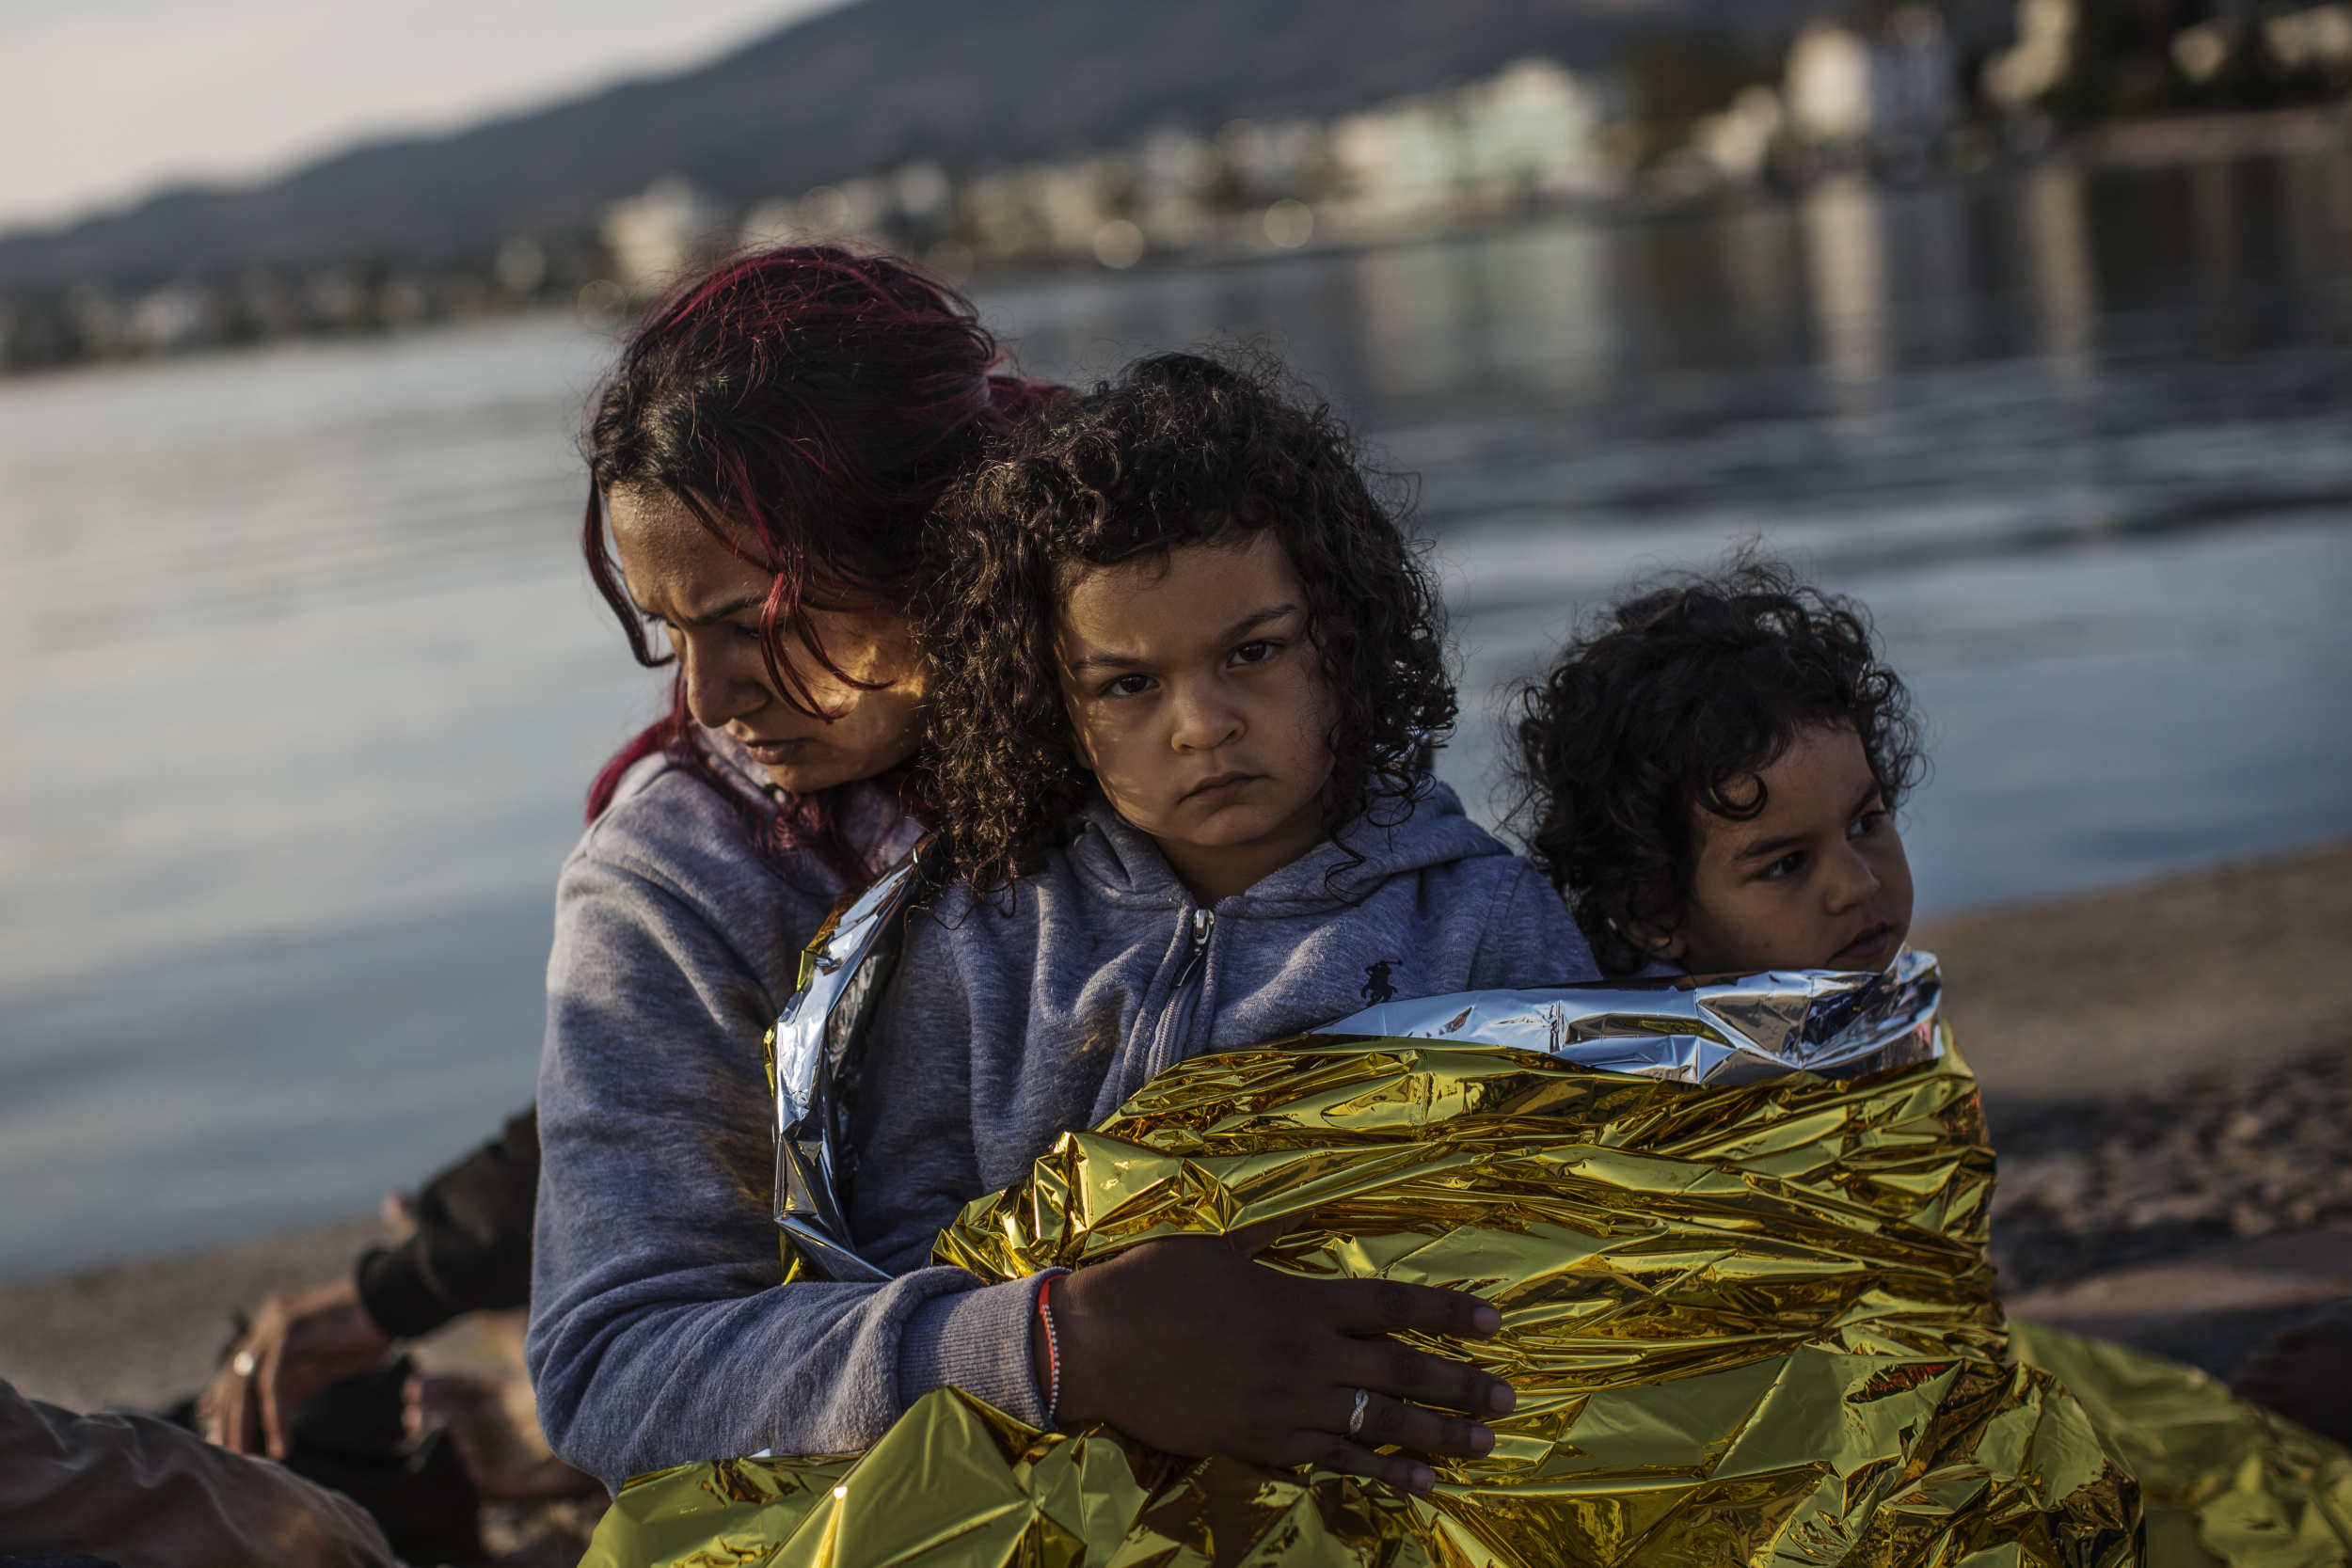 Κλειστές δομές προσφύγων: Η επίταξη, οι δομές και οι αντιδράσεις